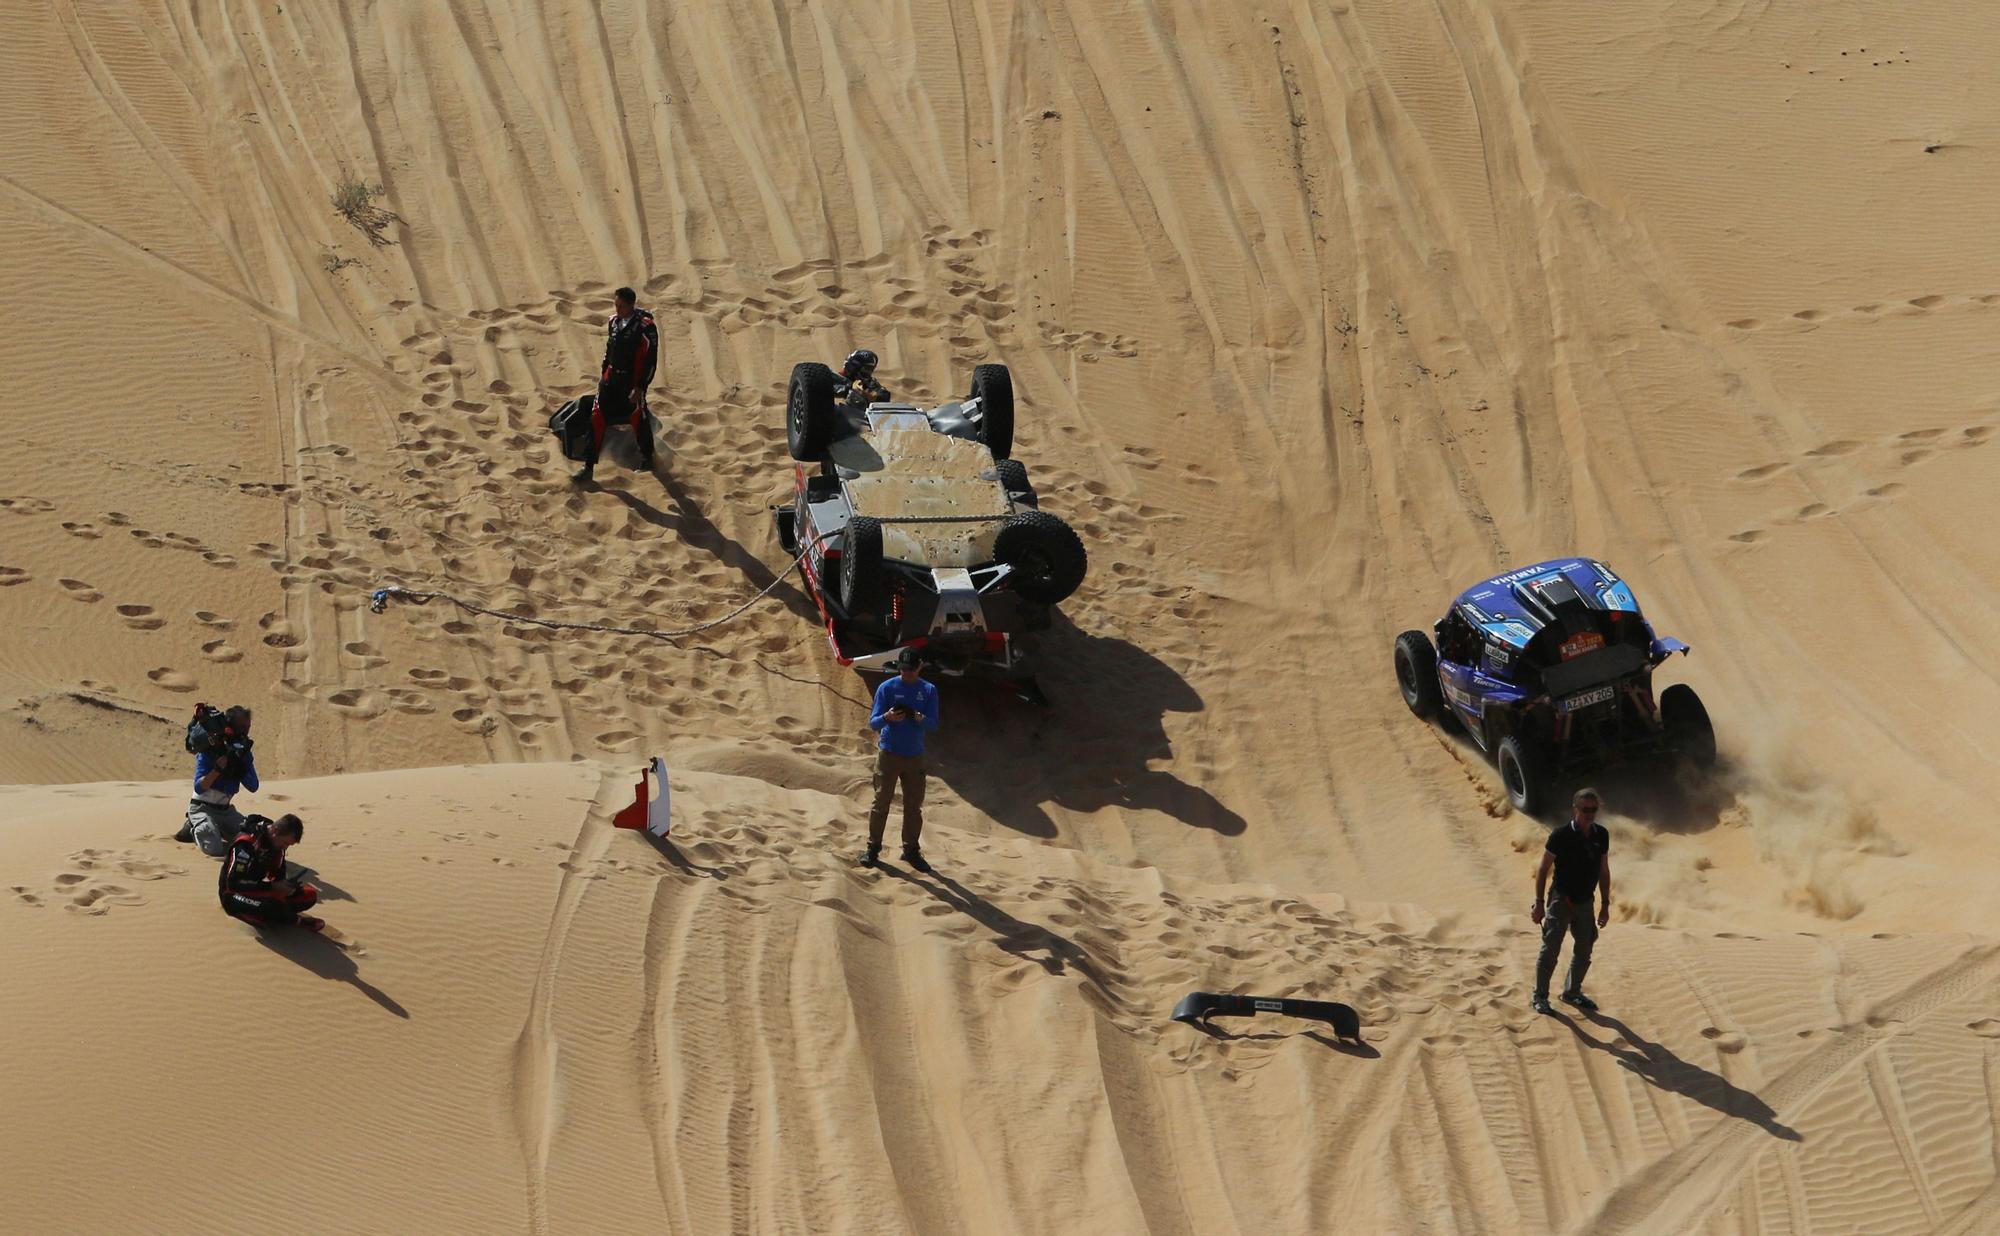 Dakar Rally (163660776).jpg